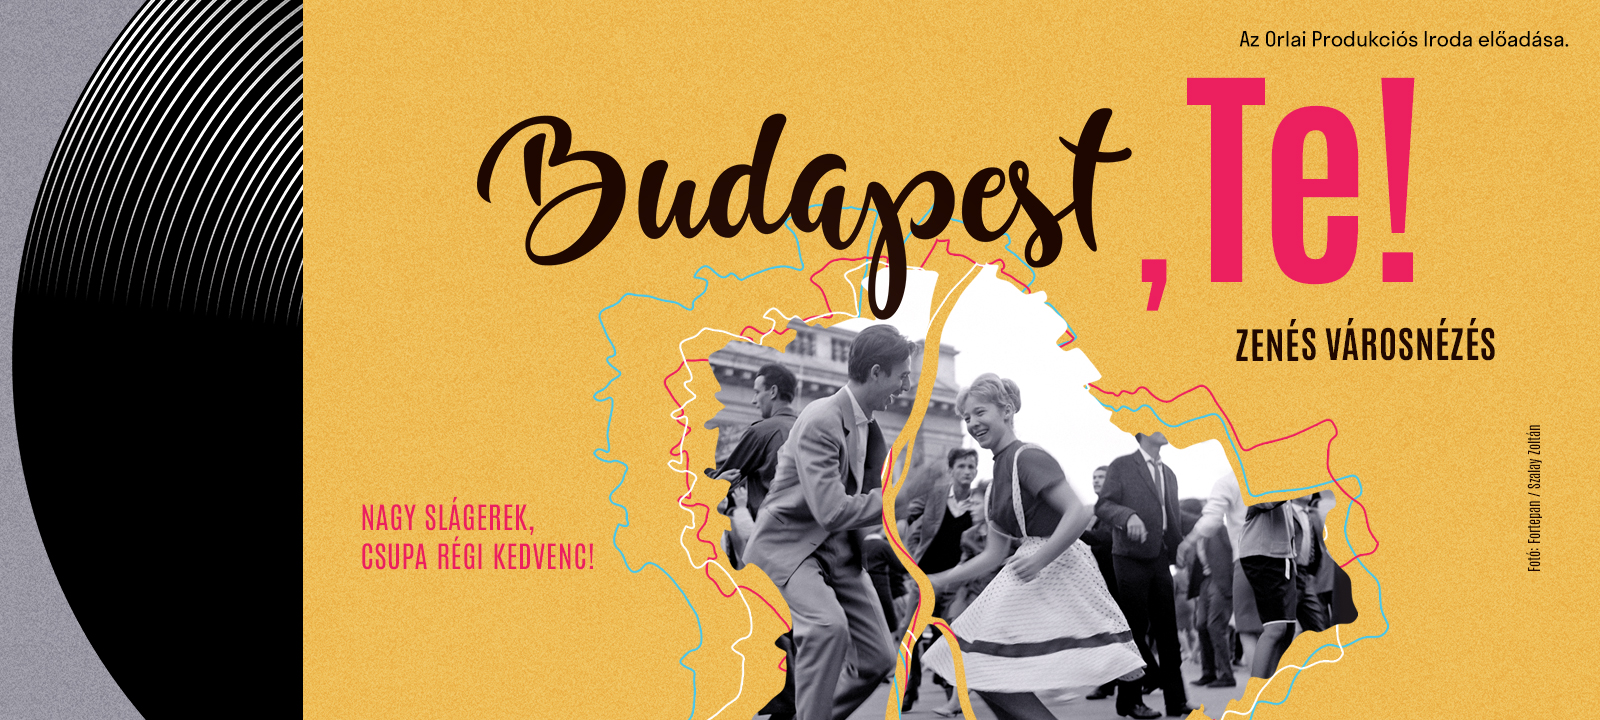 Budapest, Te! – ősbemutató